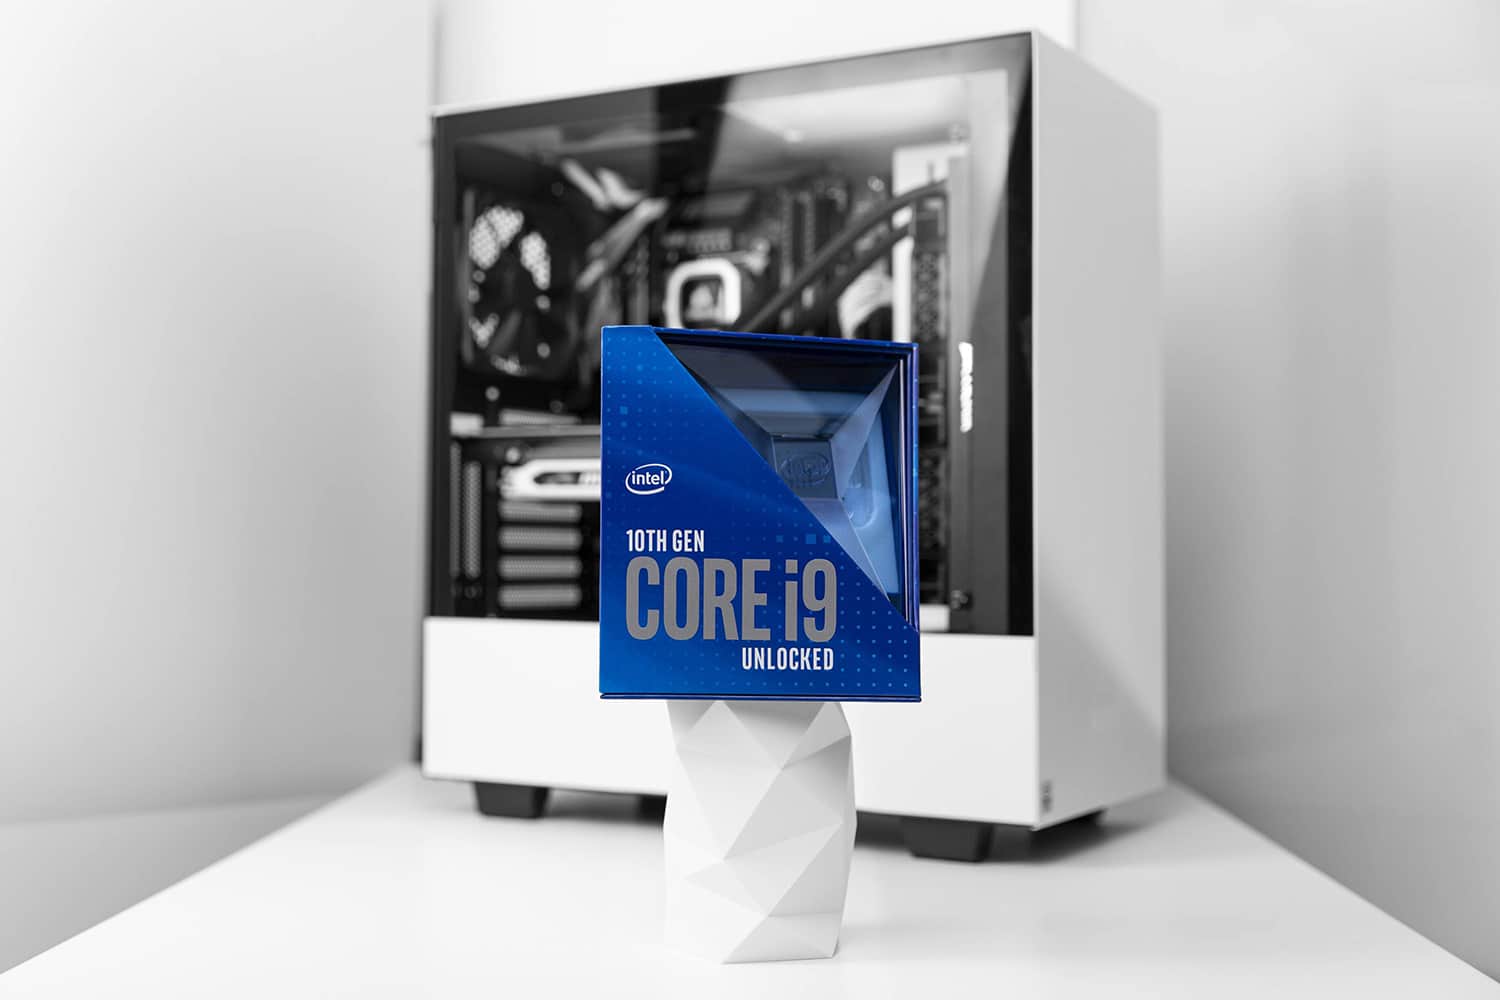 Intel’s flagship Core i9-10900K processor.